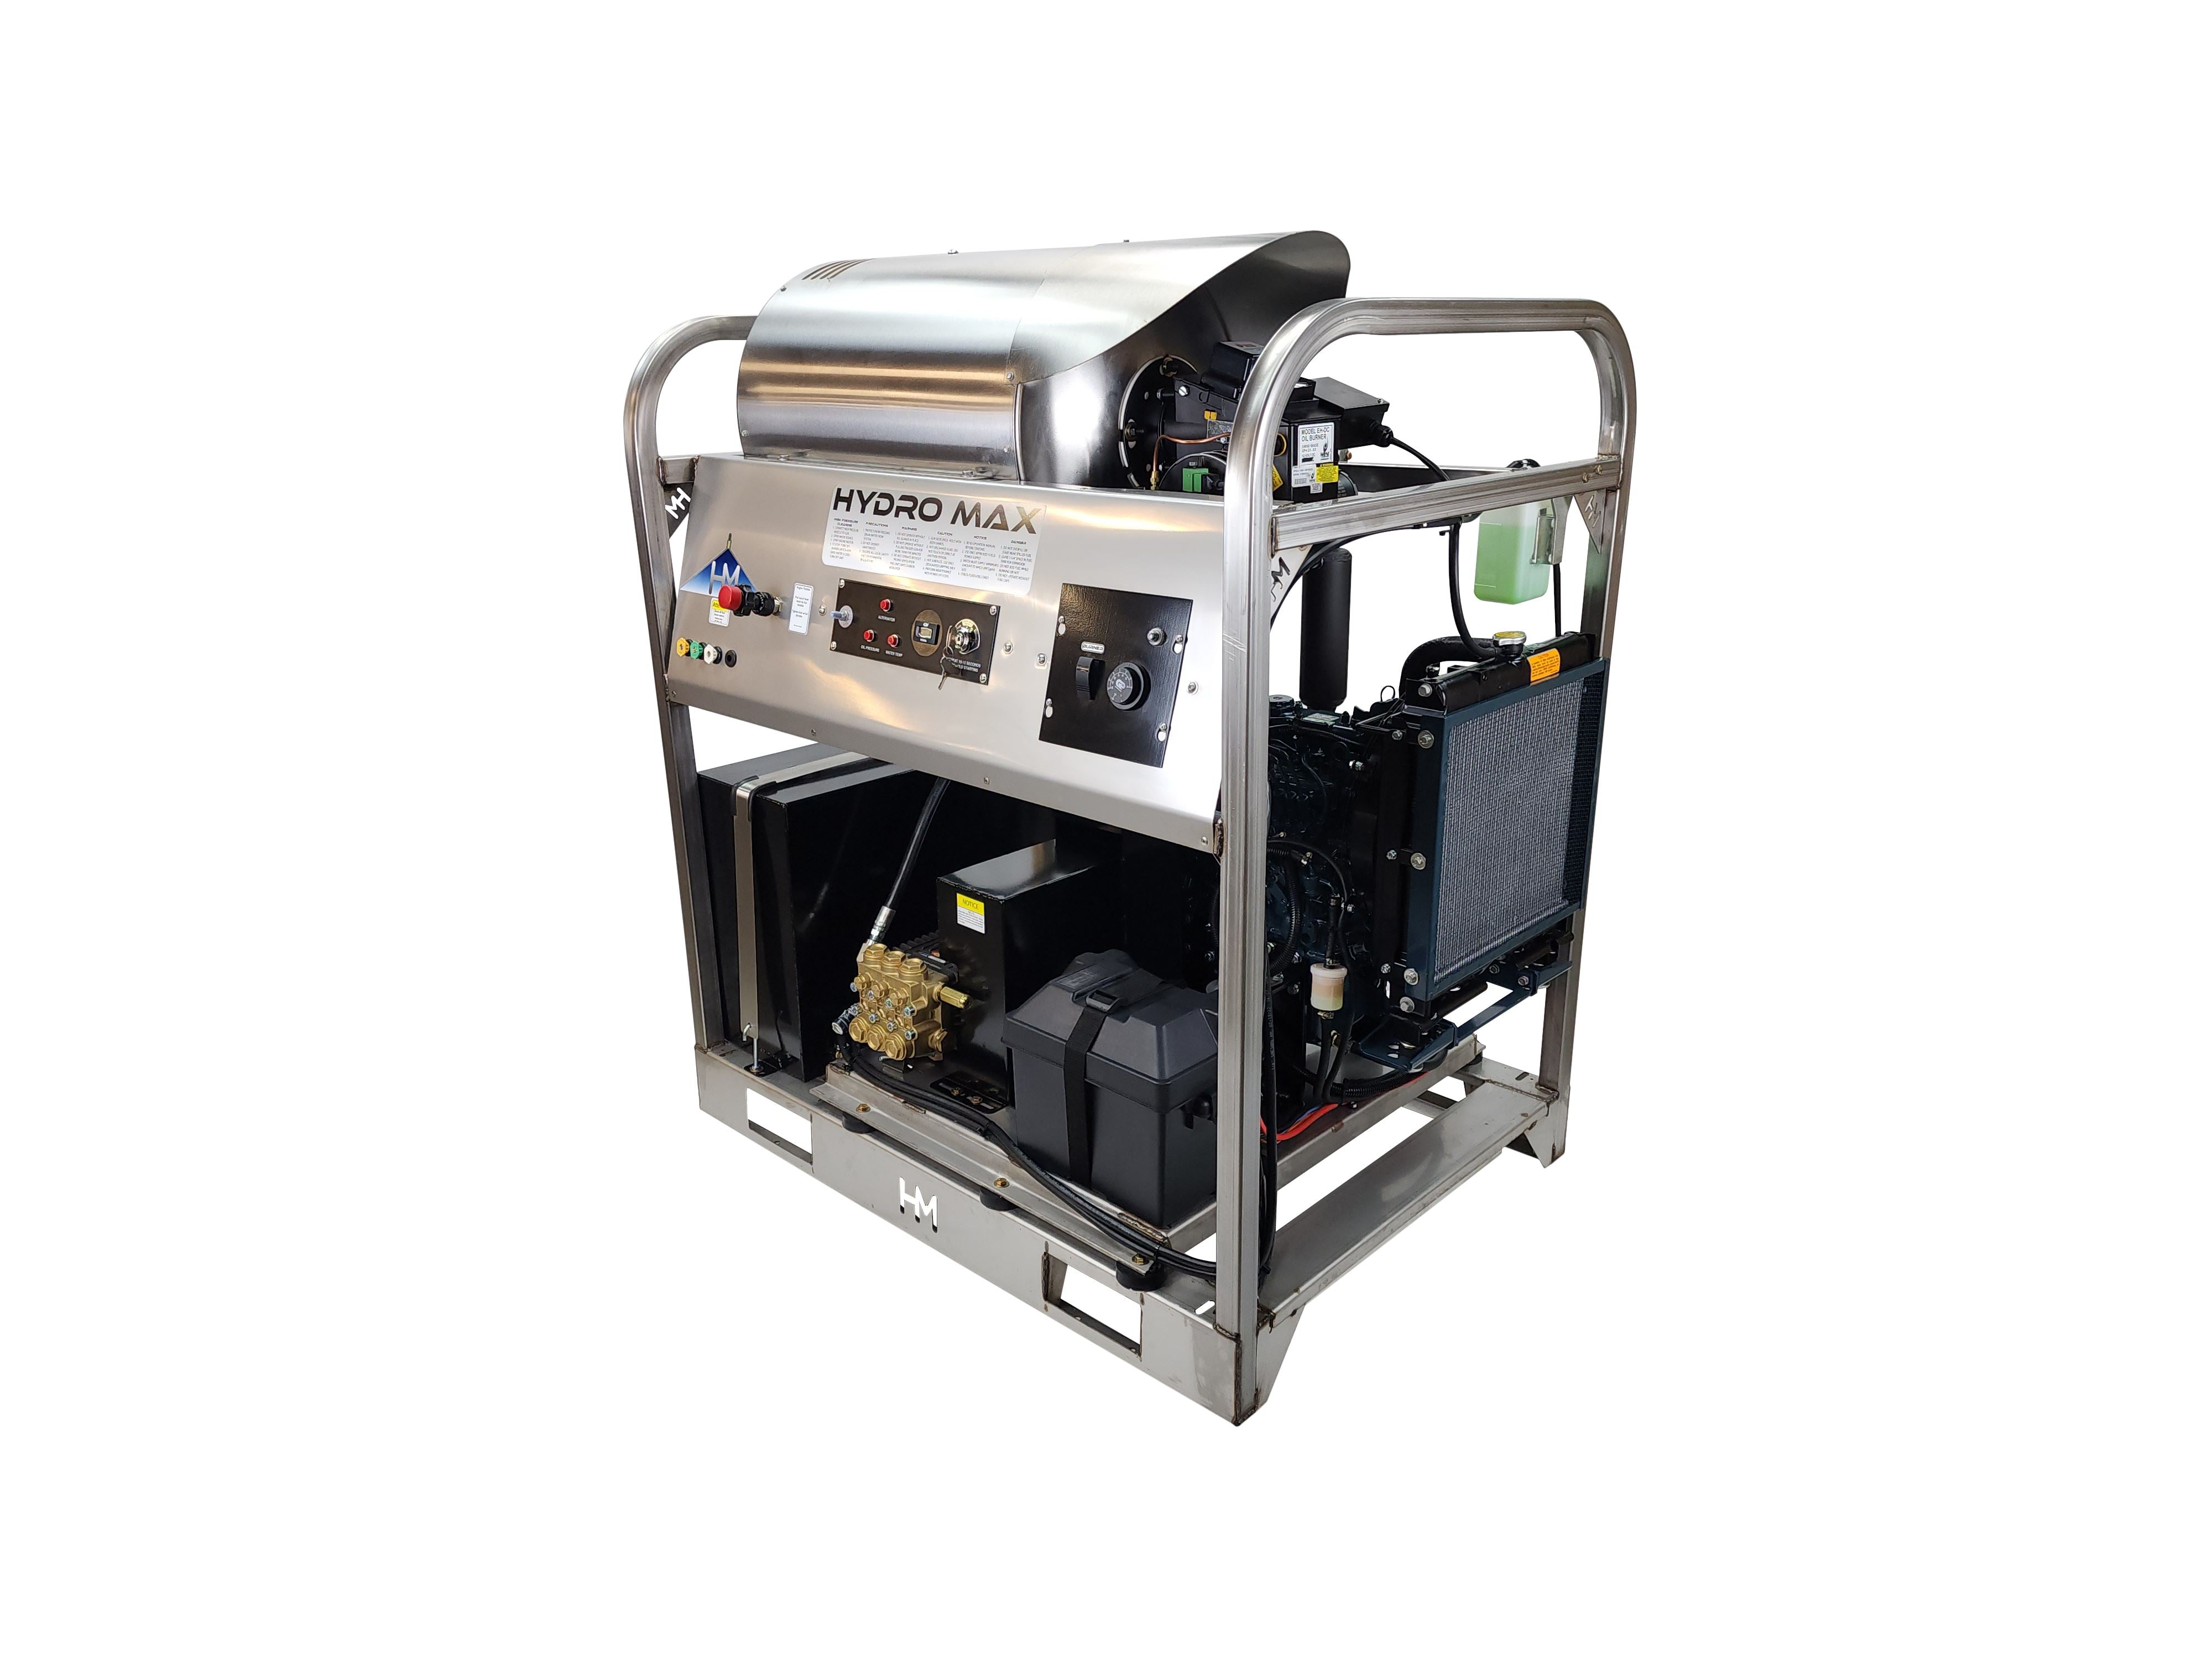 SIP 8980 Hot Water Pressure Washer, 230V 130bar 34200L/h